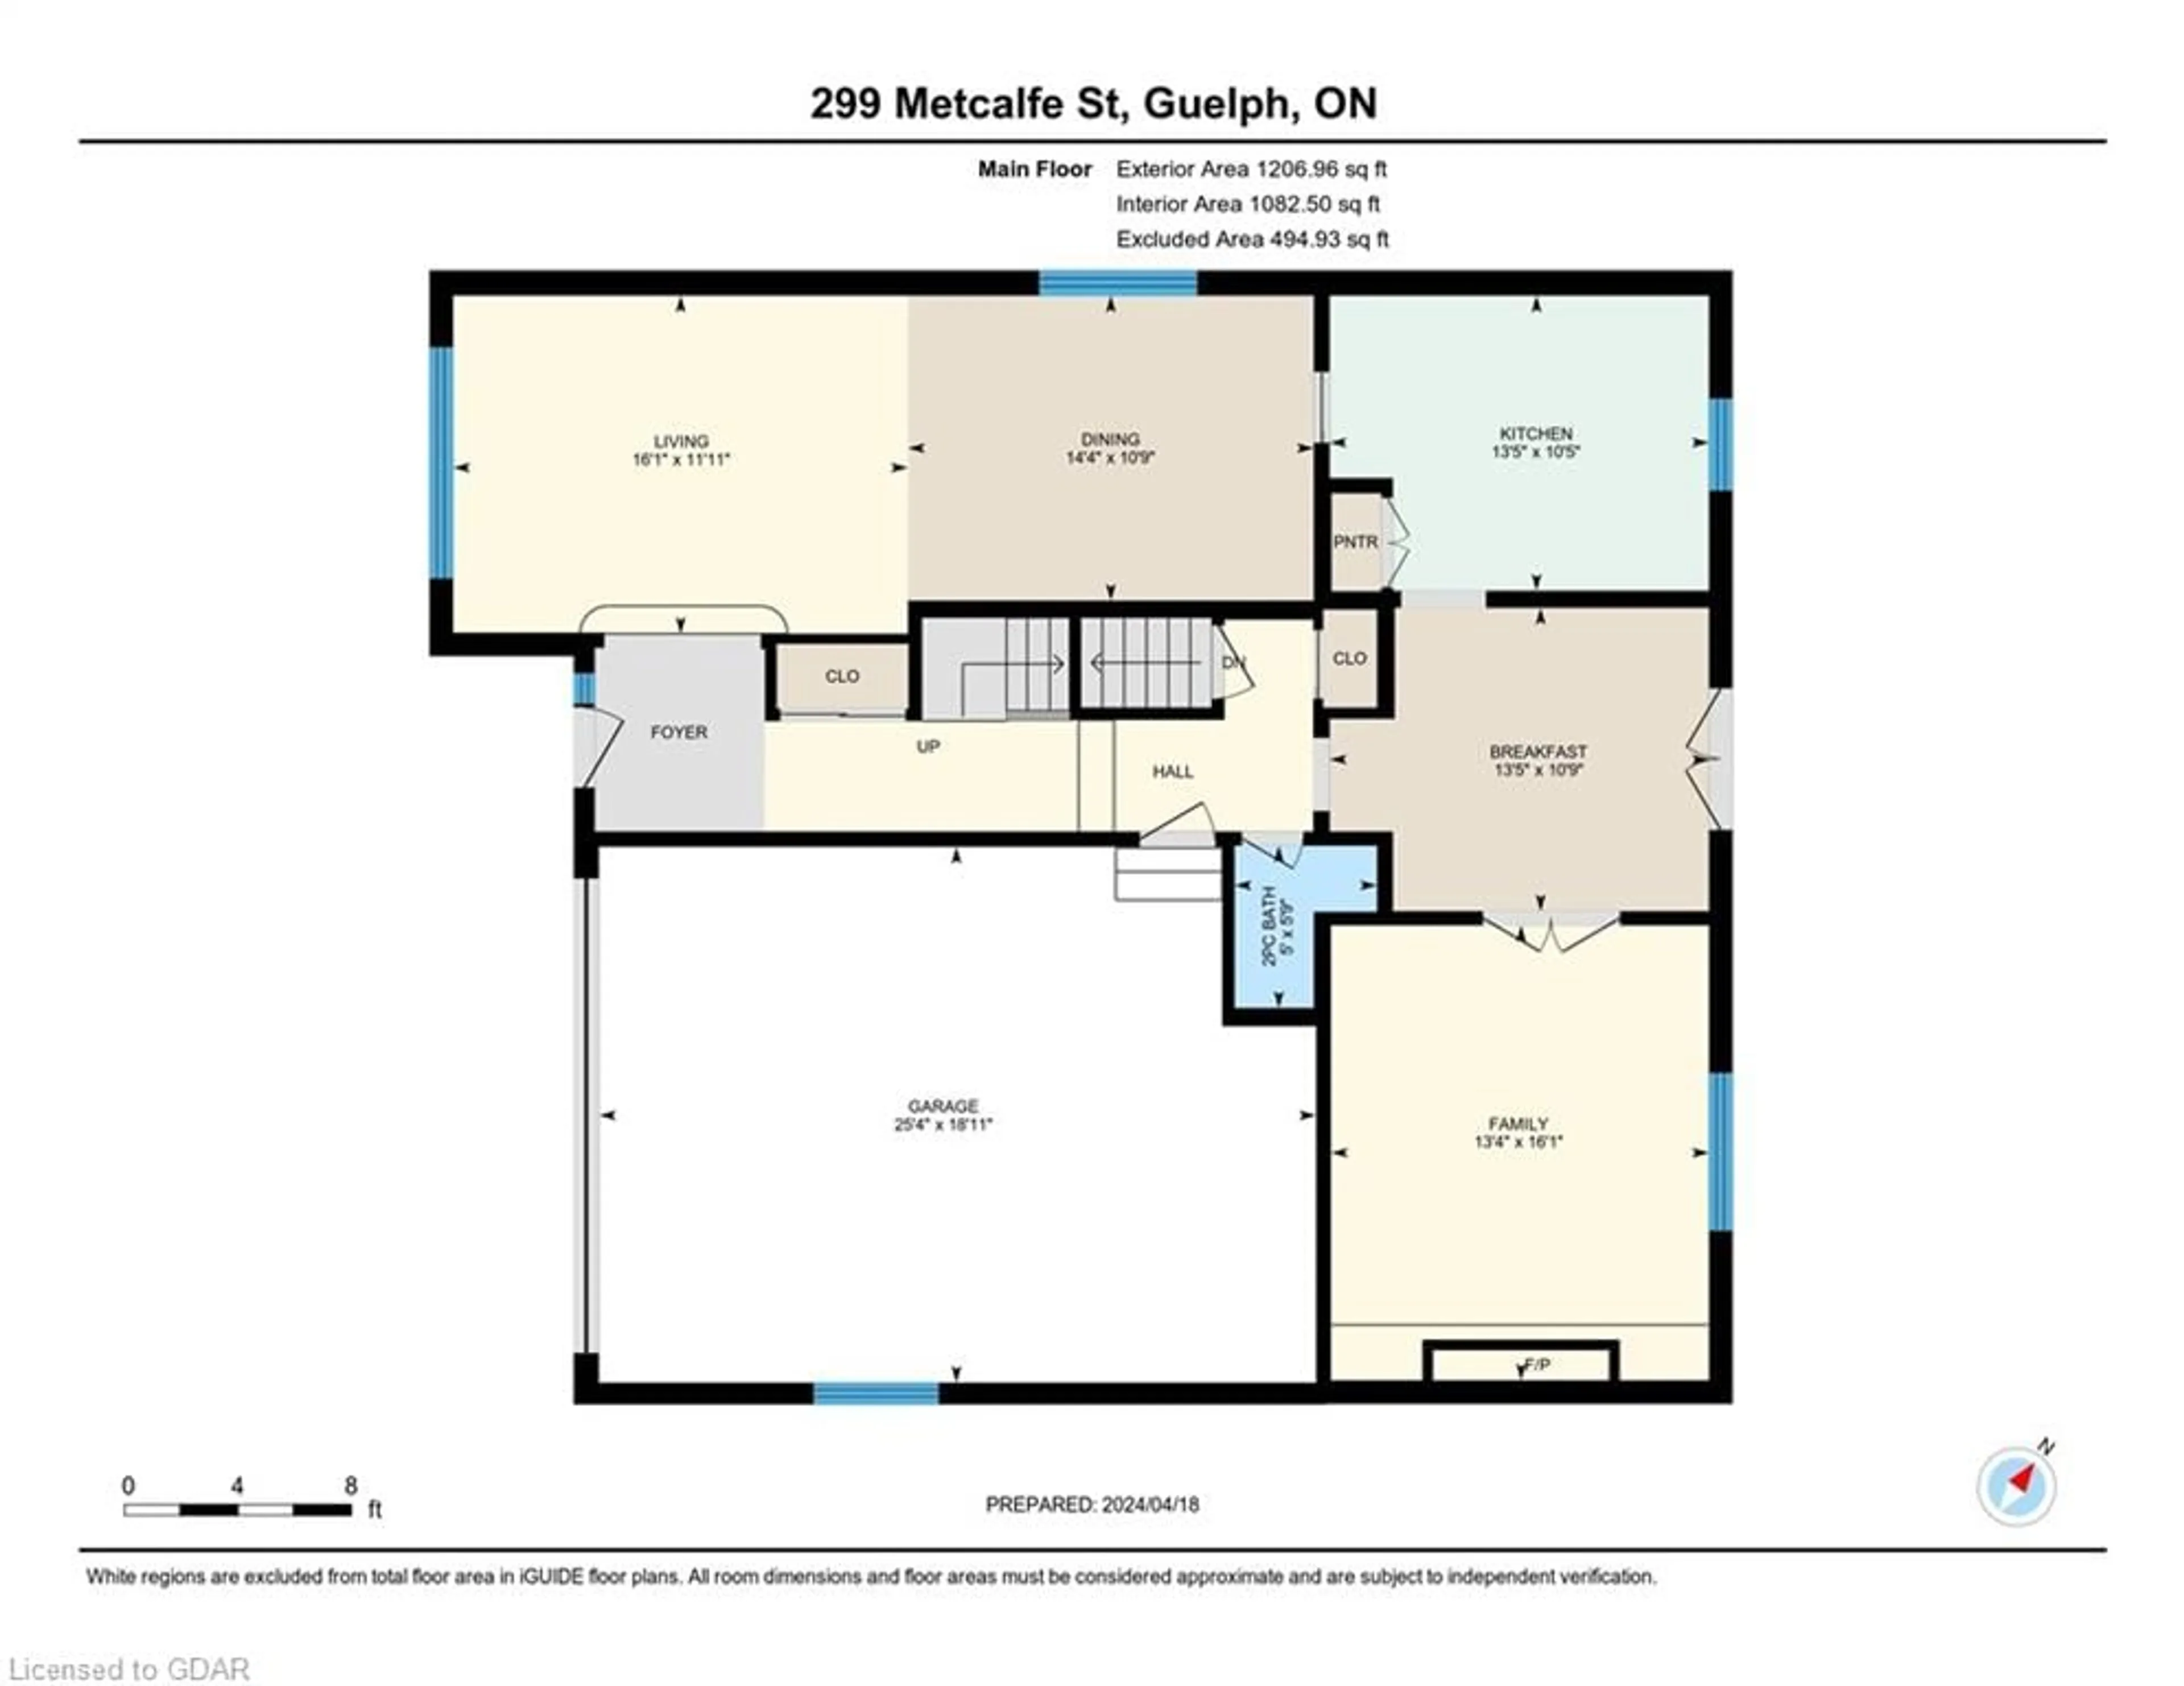 Floor plan for 299 Metcalfe St, Guelph Ontario N1E 4Z2